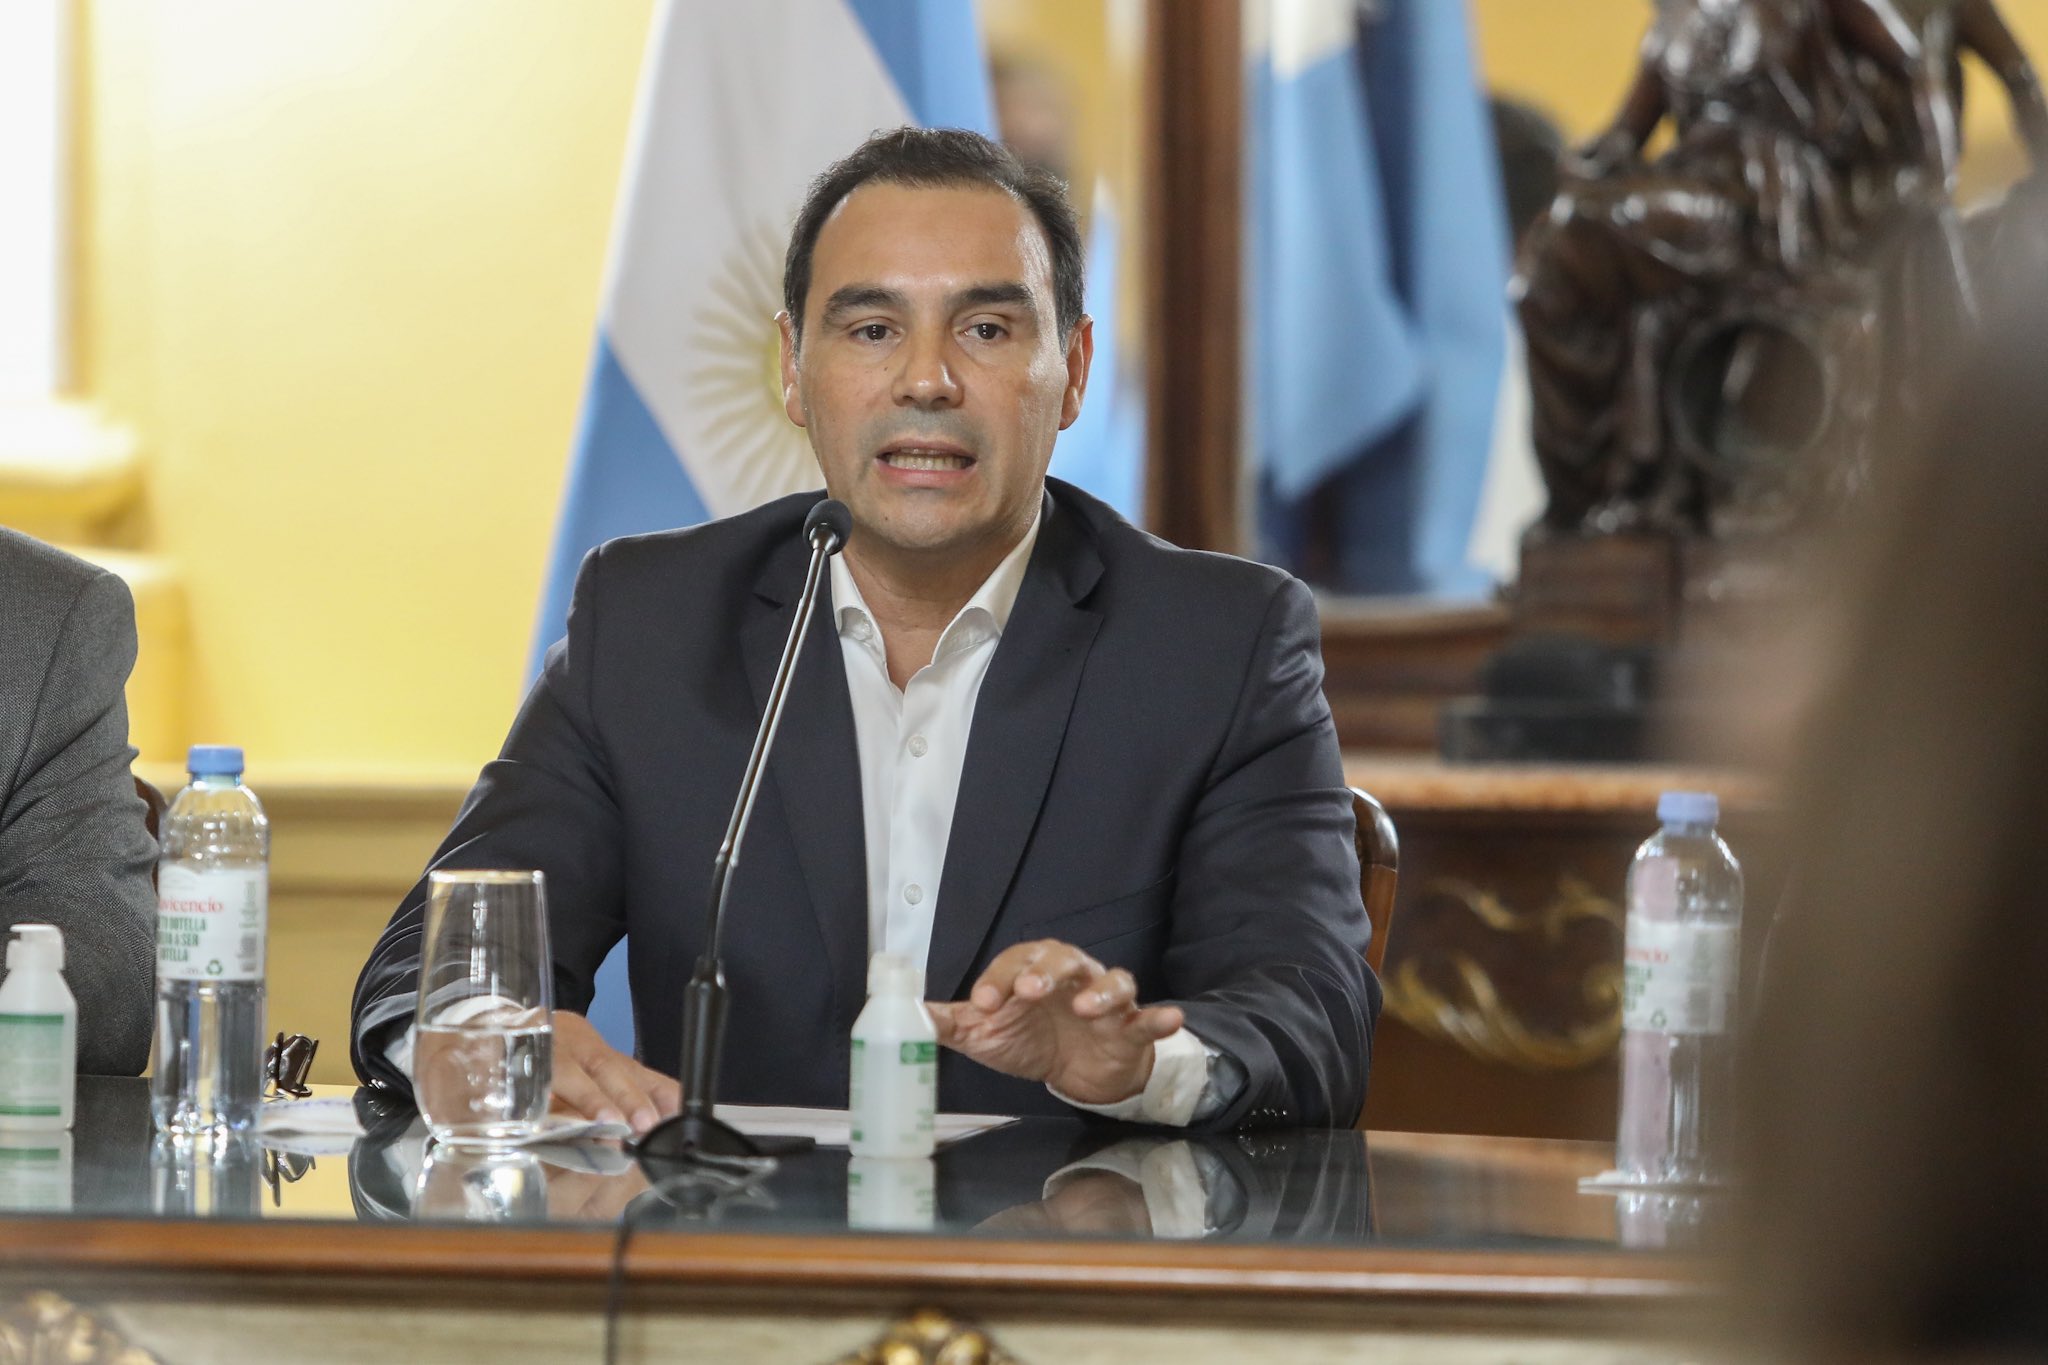 Elecciones de medio término en Corrientes. el oficialismo del gobernador Gustavo Valdés (foto) buscará consolidar y ampliar su mayoría en la legislatura de cara a la sucesión en 2025